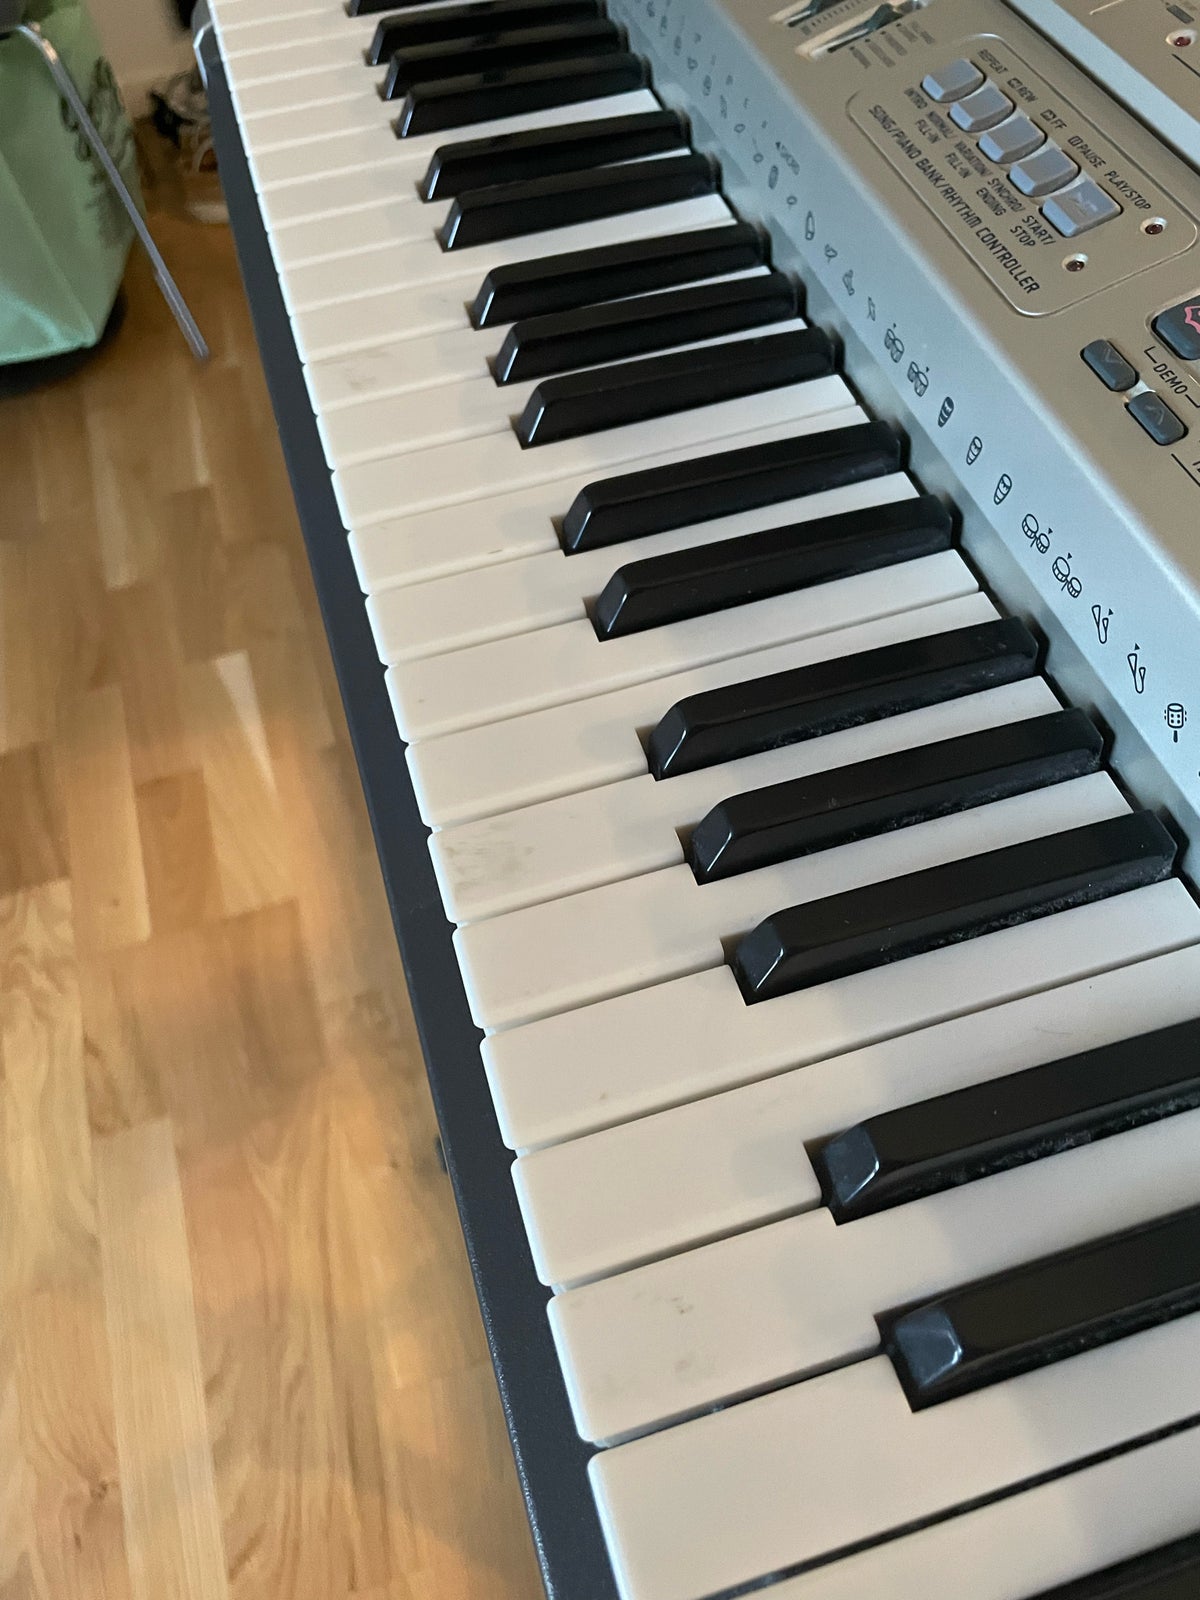 Keyboard, Casio LK-93tv